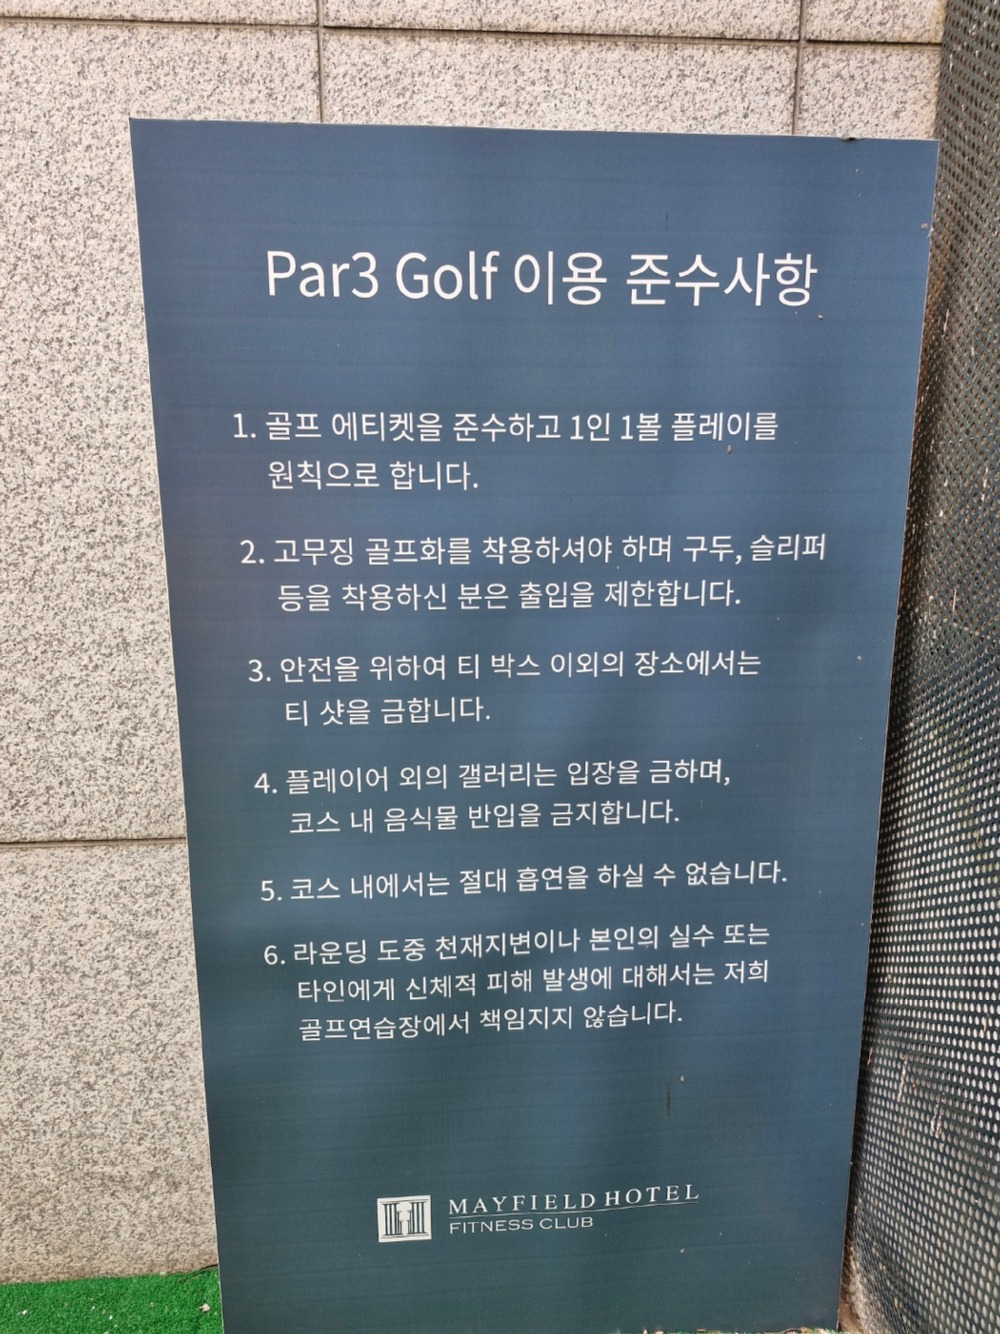 파3 골프 이용 준수사항